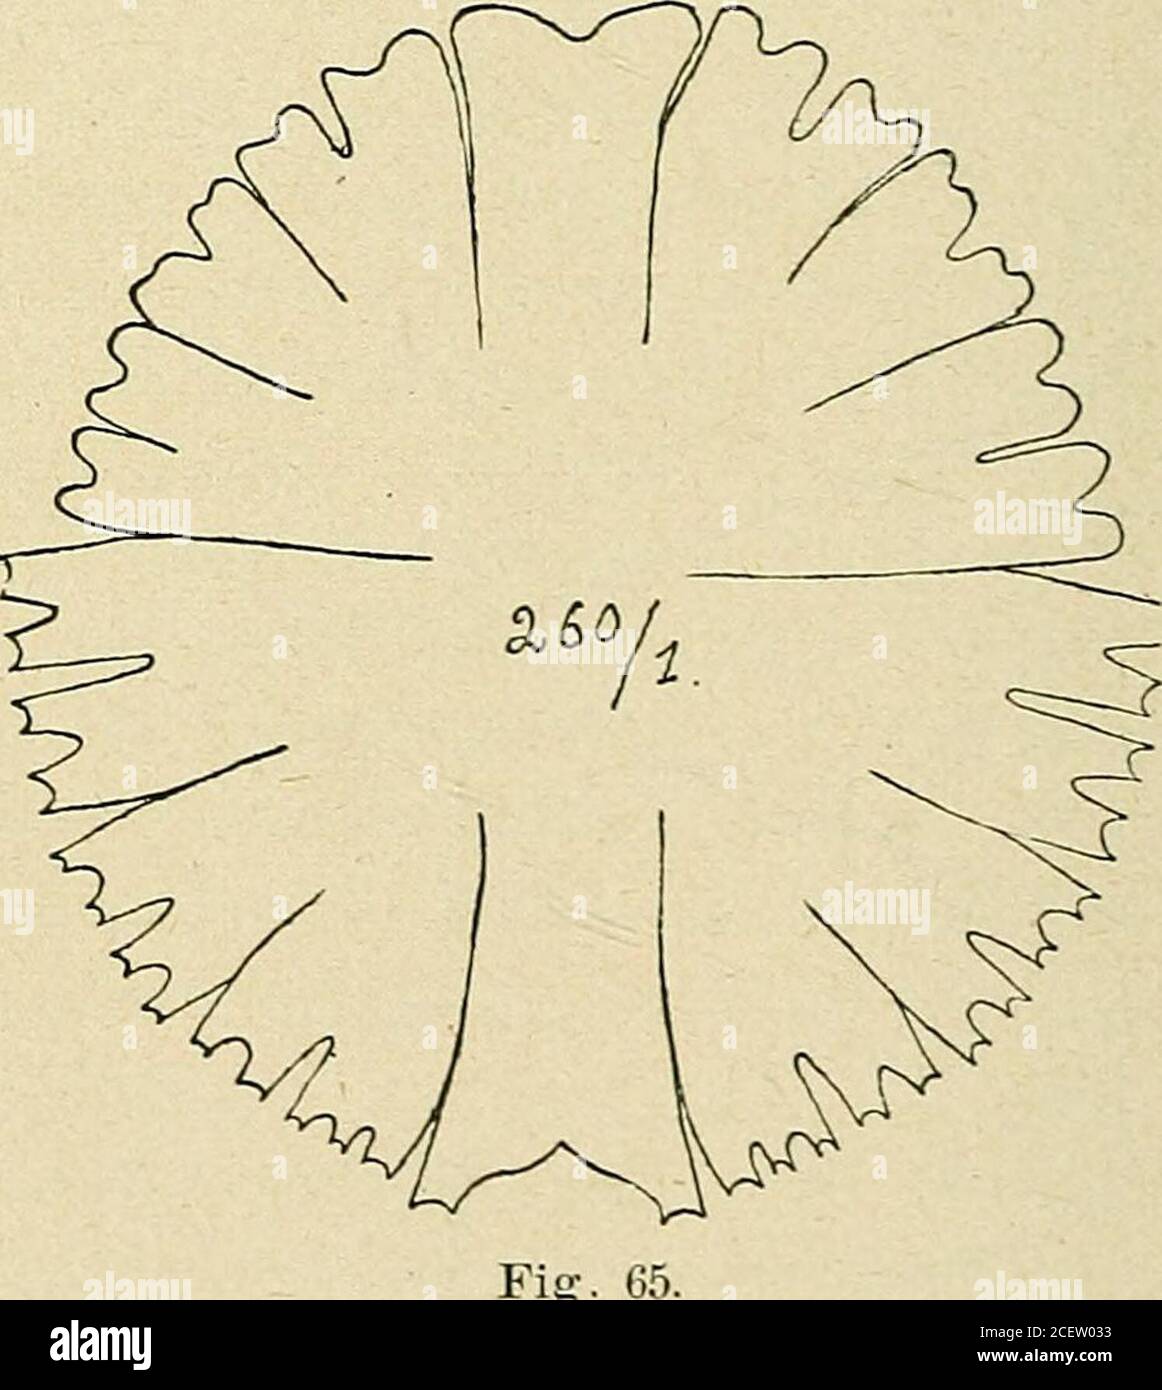 . Bulletin de la Société botanique de Genève. 19 p; lat. isth. 5,5-6 u. Assez rare. 33. Euaslrum montanum West, /?/•//. Desmid.,II, p. 58, pi. XXXIX, fig. 8 = Cosmarium su- breinschii Sclimidle var. Boldtiana Schmidle, Berner Alp., 1894, p. 90,pi. VI, fig. 8. Long. 20-23,5/*; lat. 14,5-19/*; lat. isth. 10,5-11 ^.Voisinage du Todtensee; assez rare. 34. Euastrum insulare (Wittr.) Roy. West, Brit. Desmid., II, p. 68pi. XL, fig. 11-13. Long. 24 //; lat. 14,5 /r, lath. isth. 5 ii. Peu fréquent- 35. Euastrum vèrrucosumEhrenb. Très abondant;Tune des Desmidiacées lesplus communes du Grimsel. 36. Miera Stock Photo